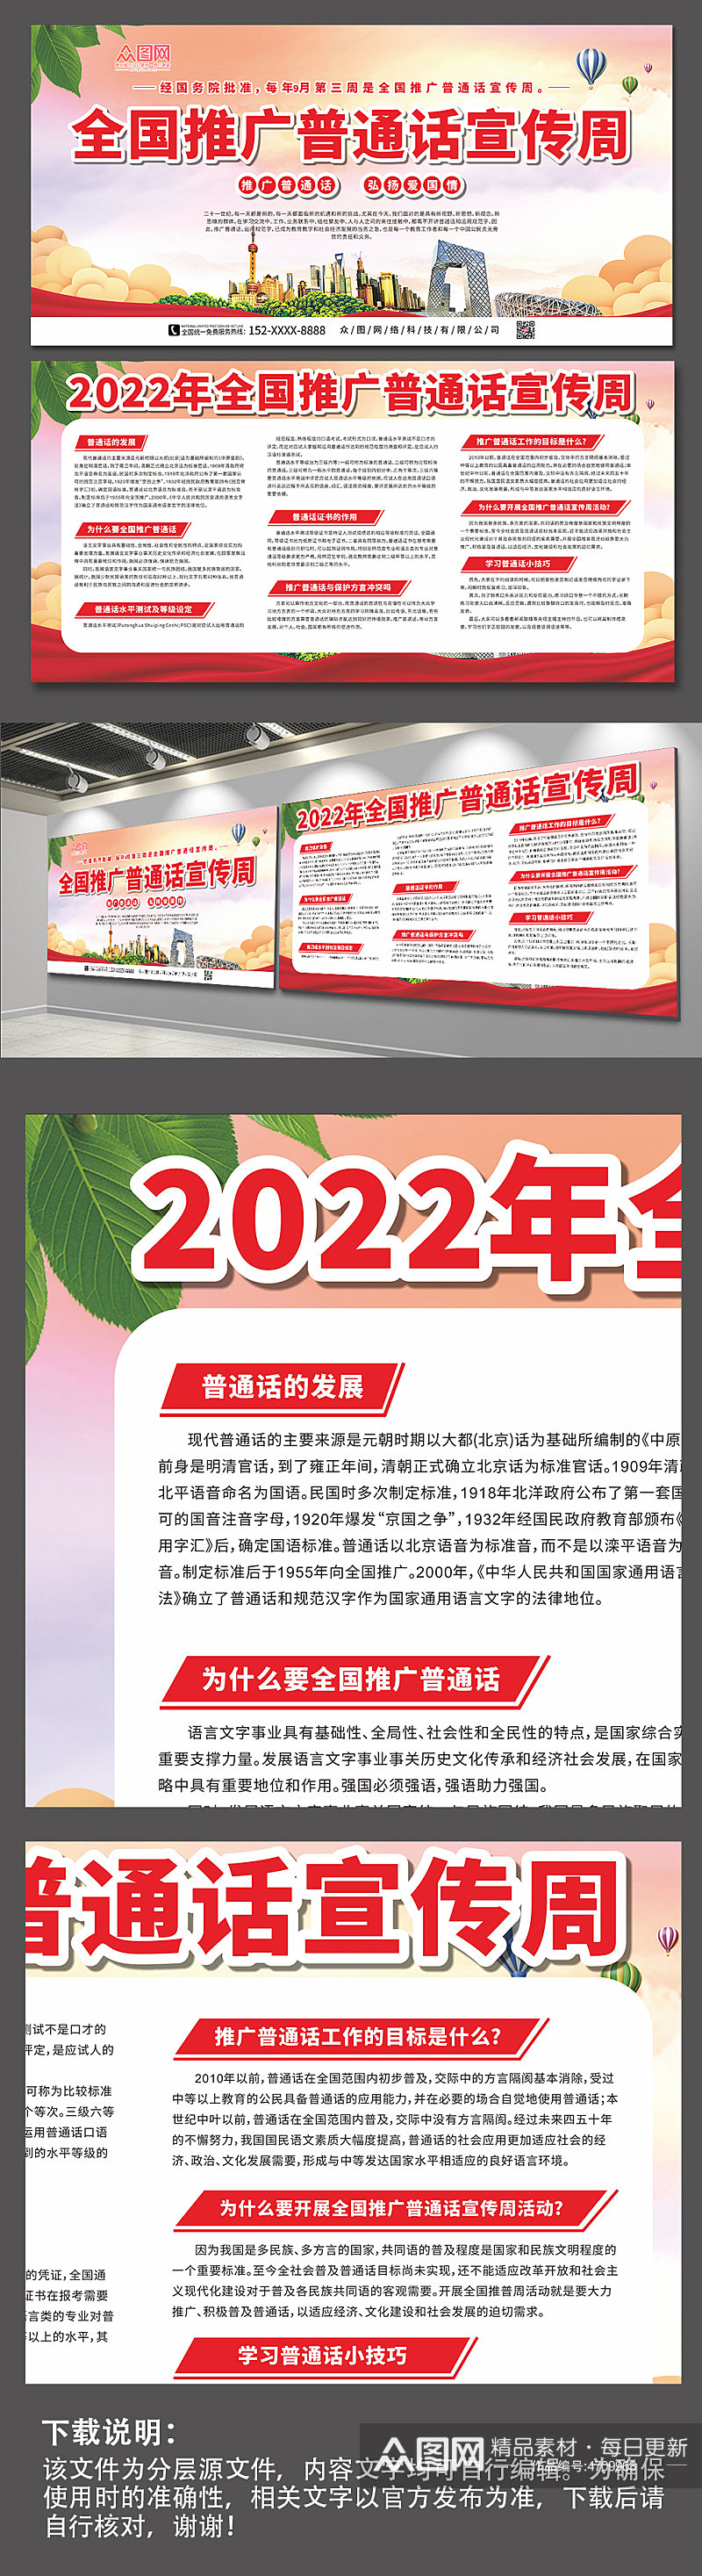 简约大气2022全国普通话宣传周展板素材